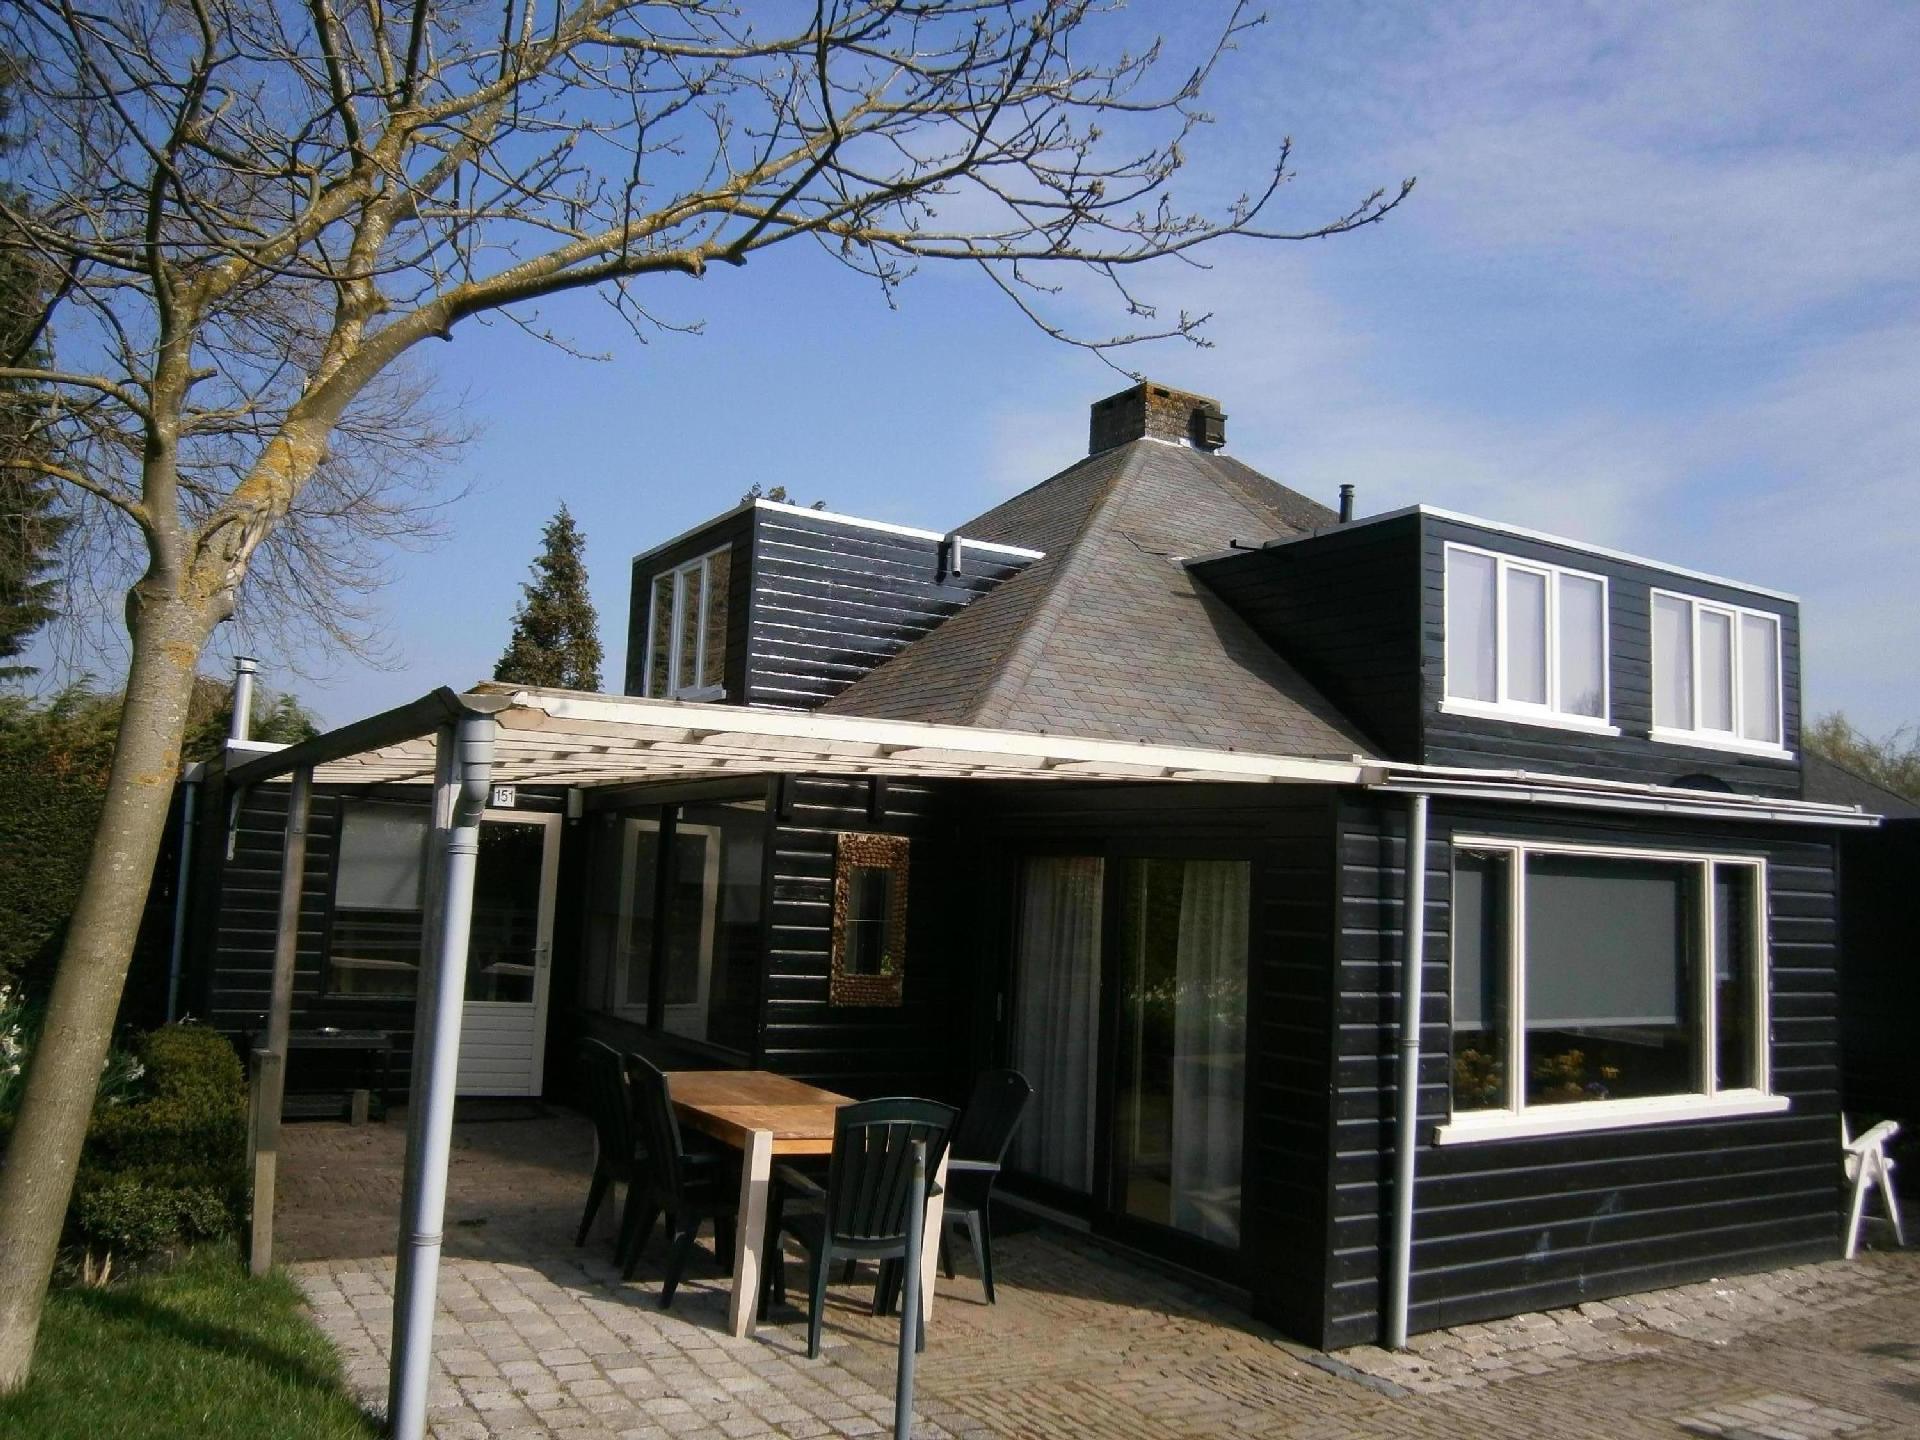 Doppelhaushälfte für sechs Personen in e Ferienhaus in den Niederlande